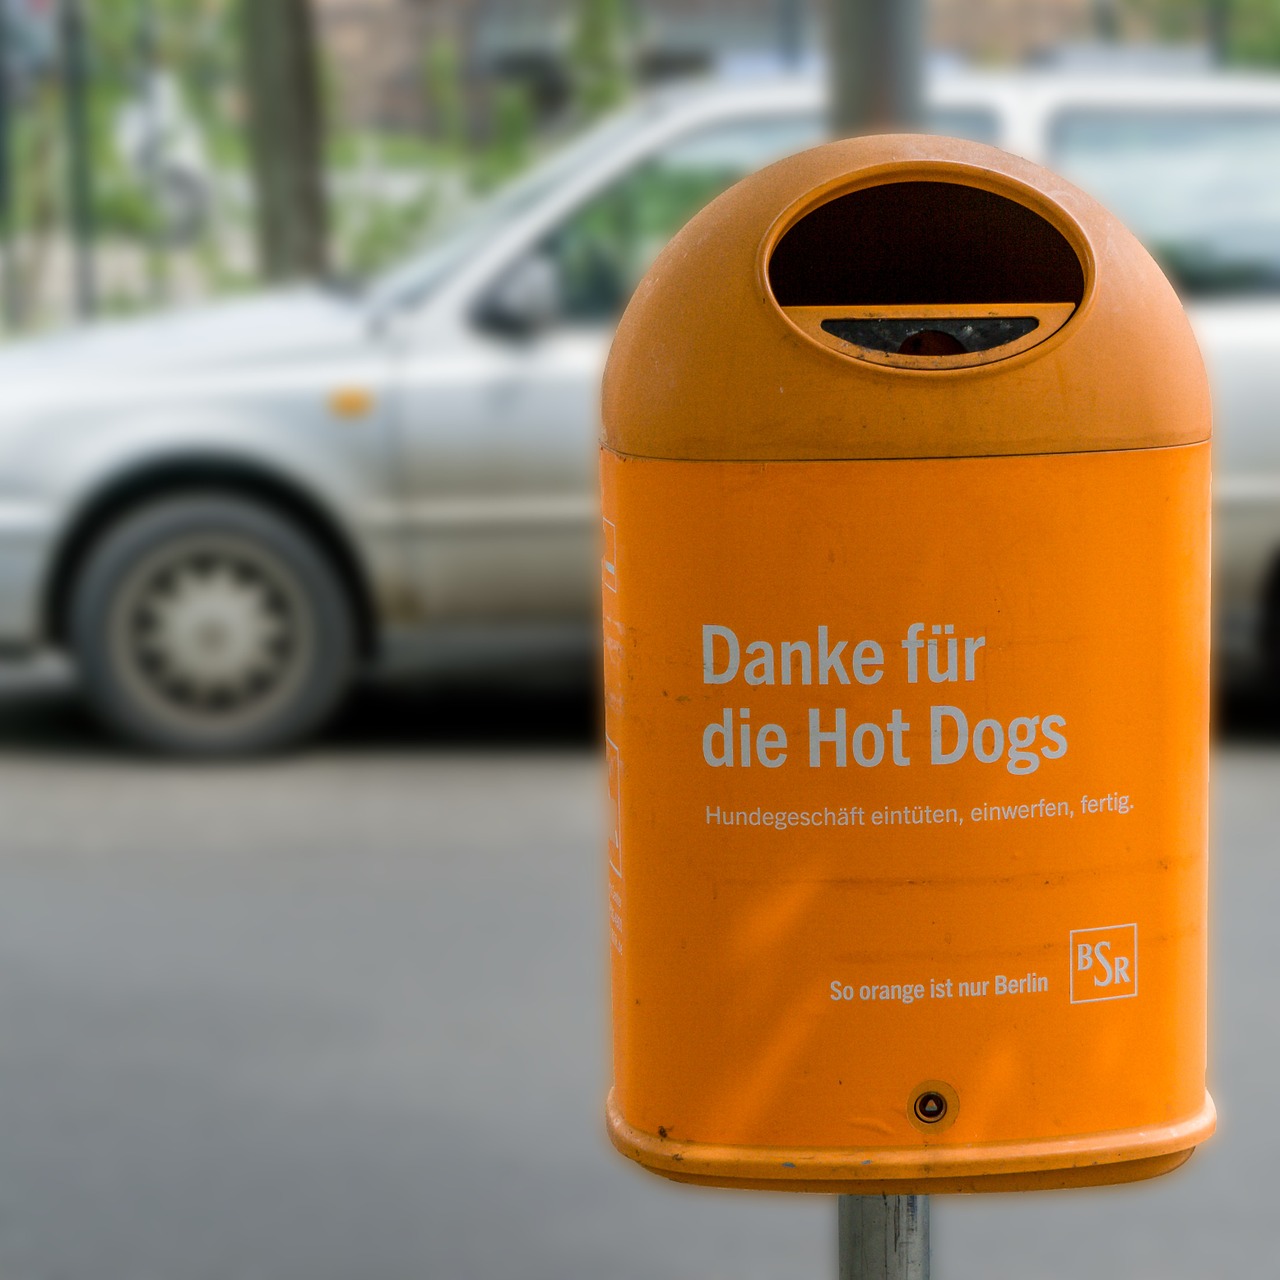 berlin garbage dog shit free photo